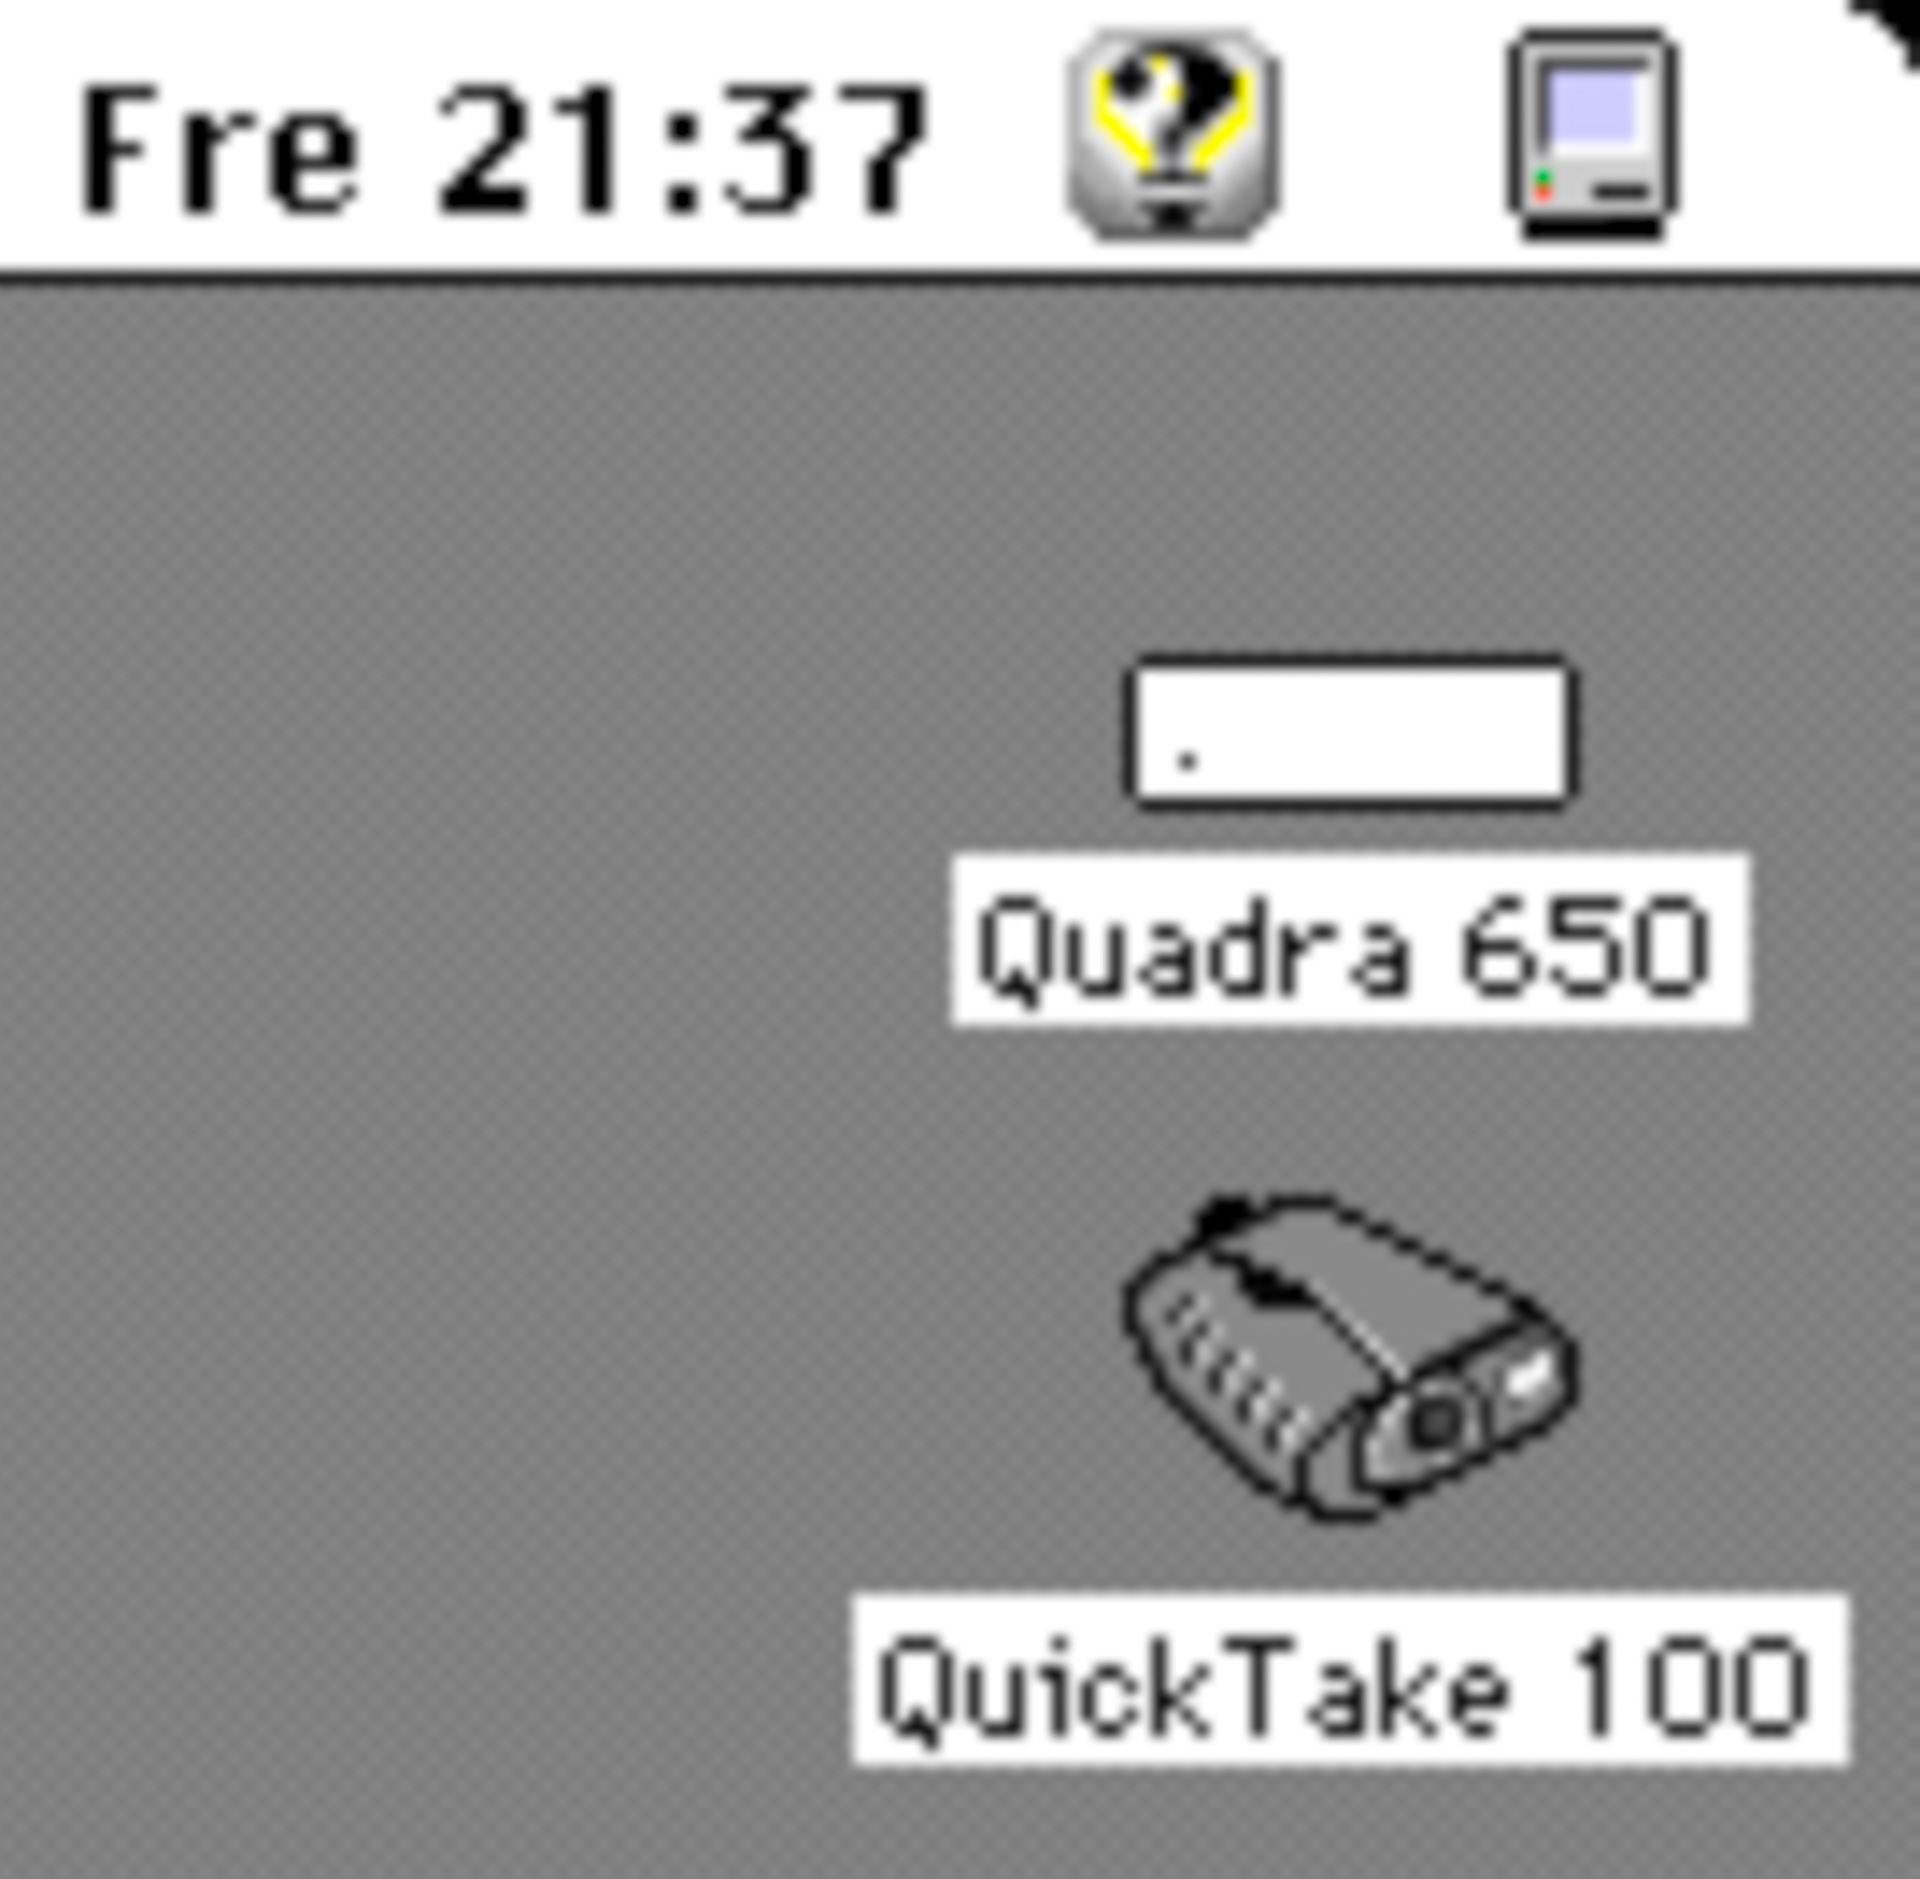 QuickTake 100 gemountet (Screenshot)